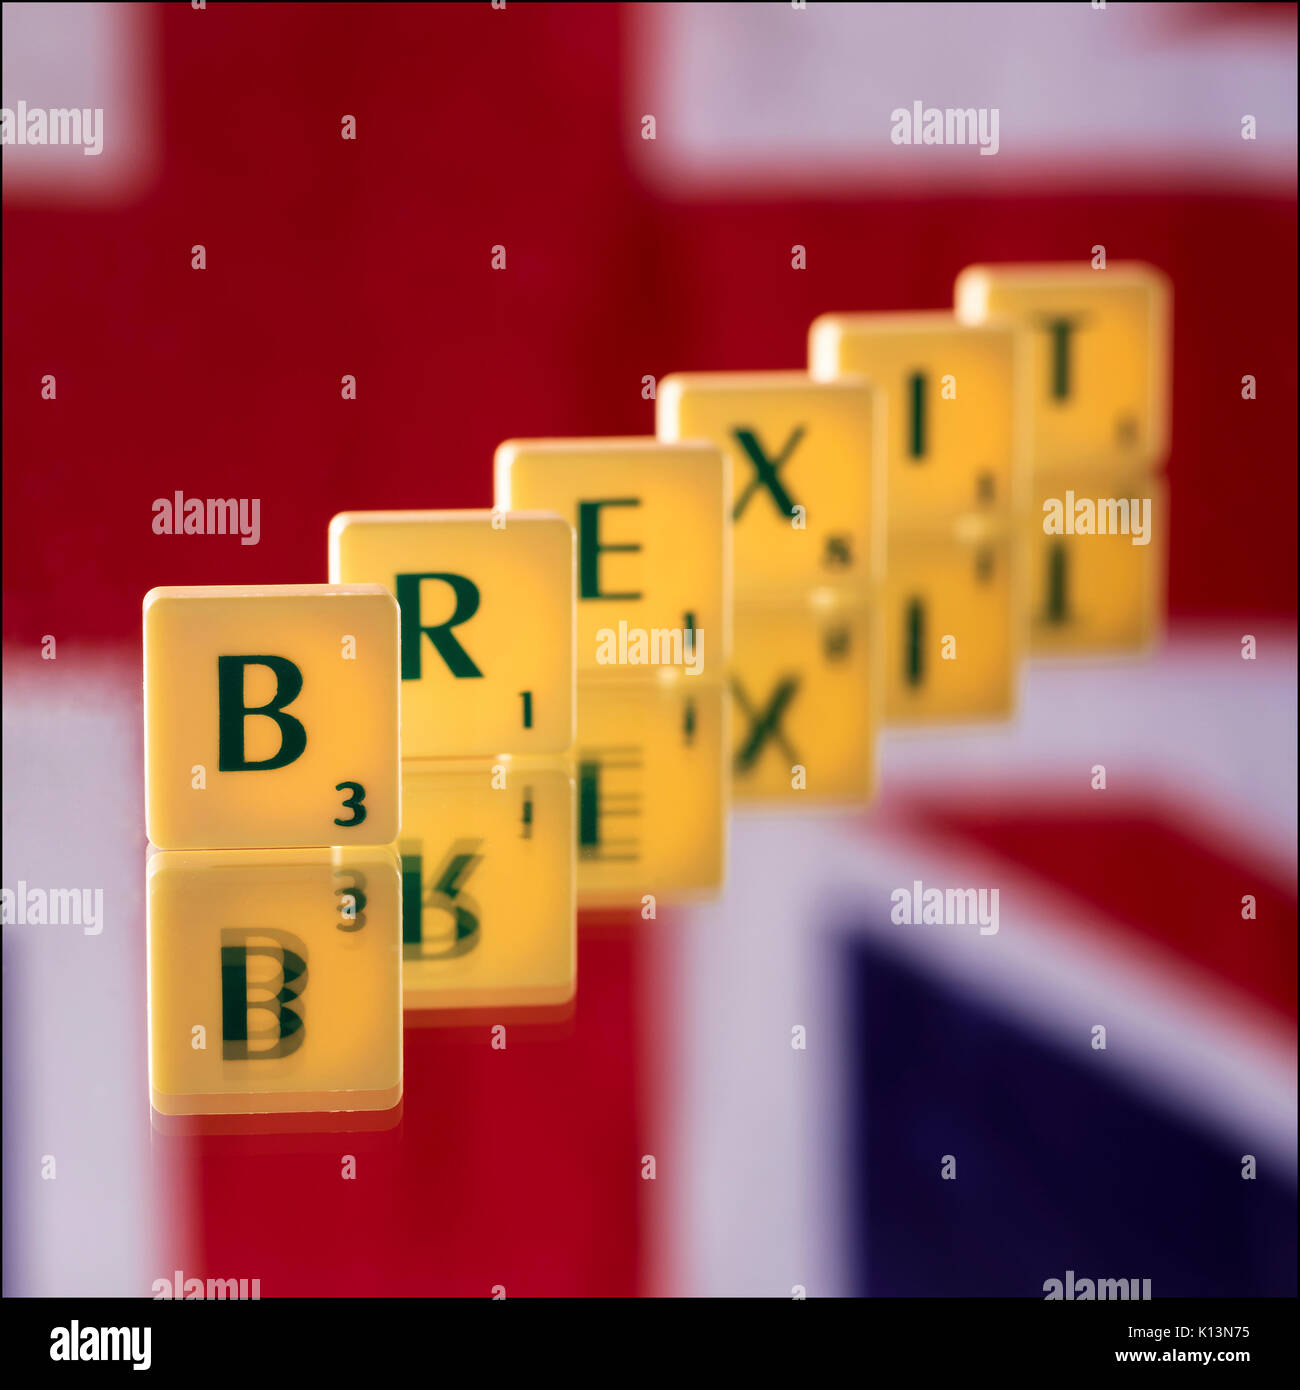 El favorito de todos, tema, Brexit! Scrabble cartas se situó en un espejo con una Union Jack colgado en la pared detrás. Strobist: monolight con un 7' re Foto de stock